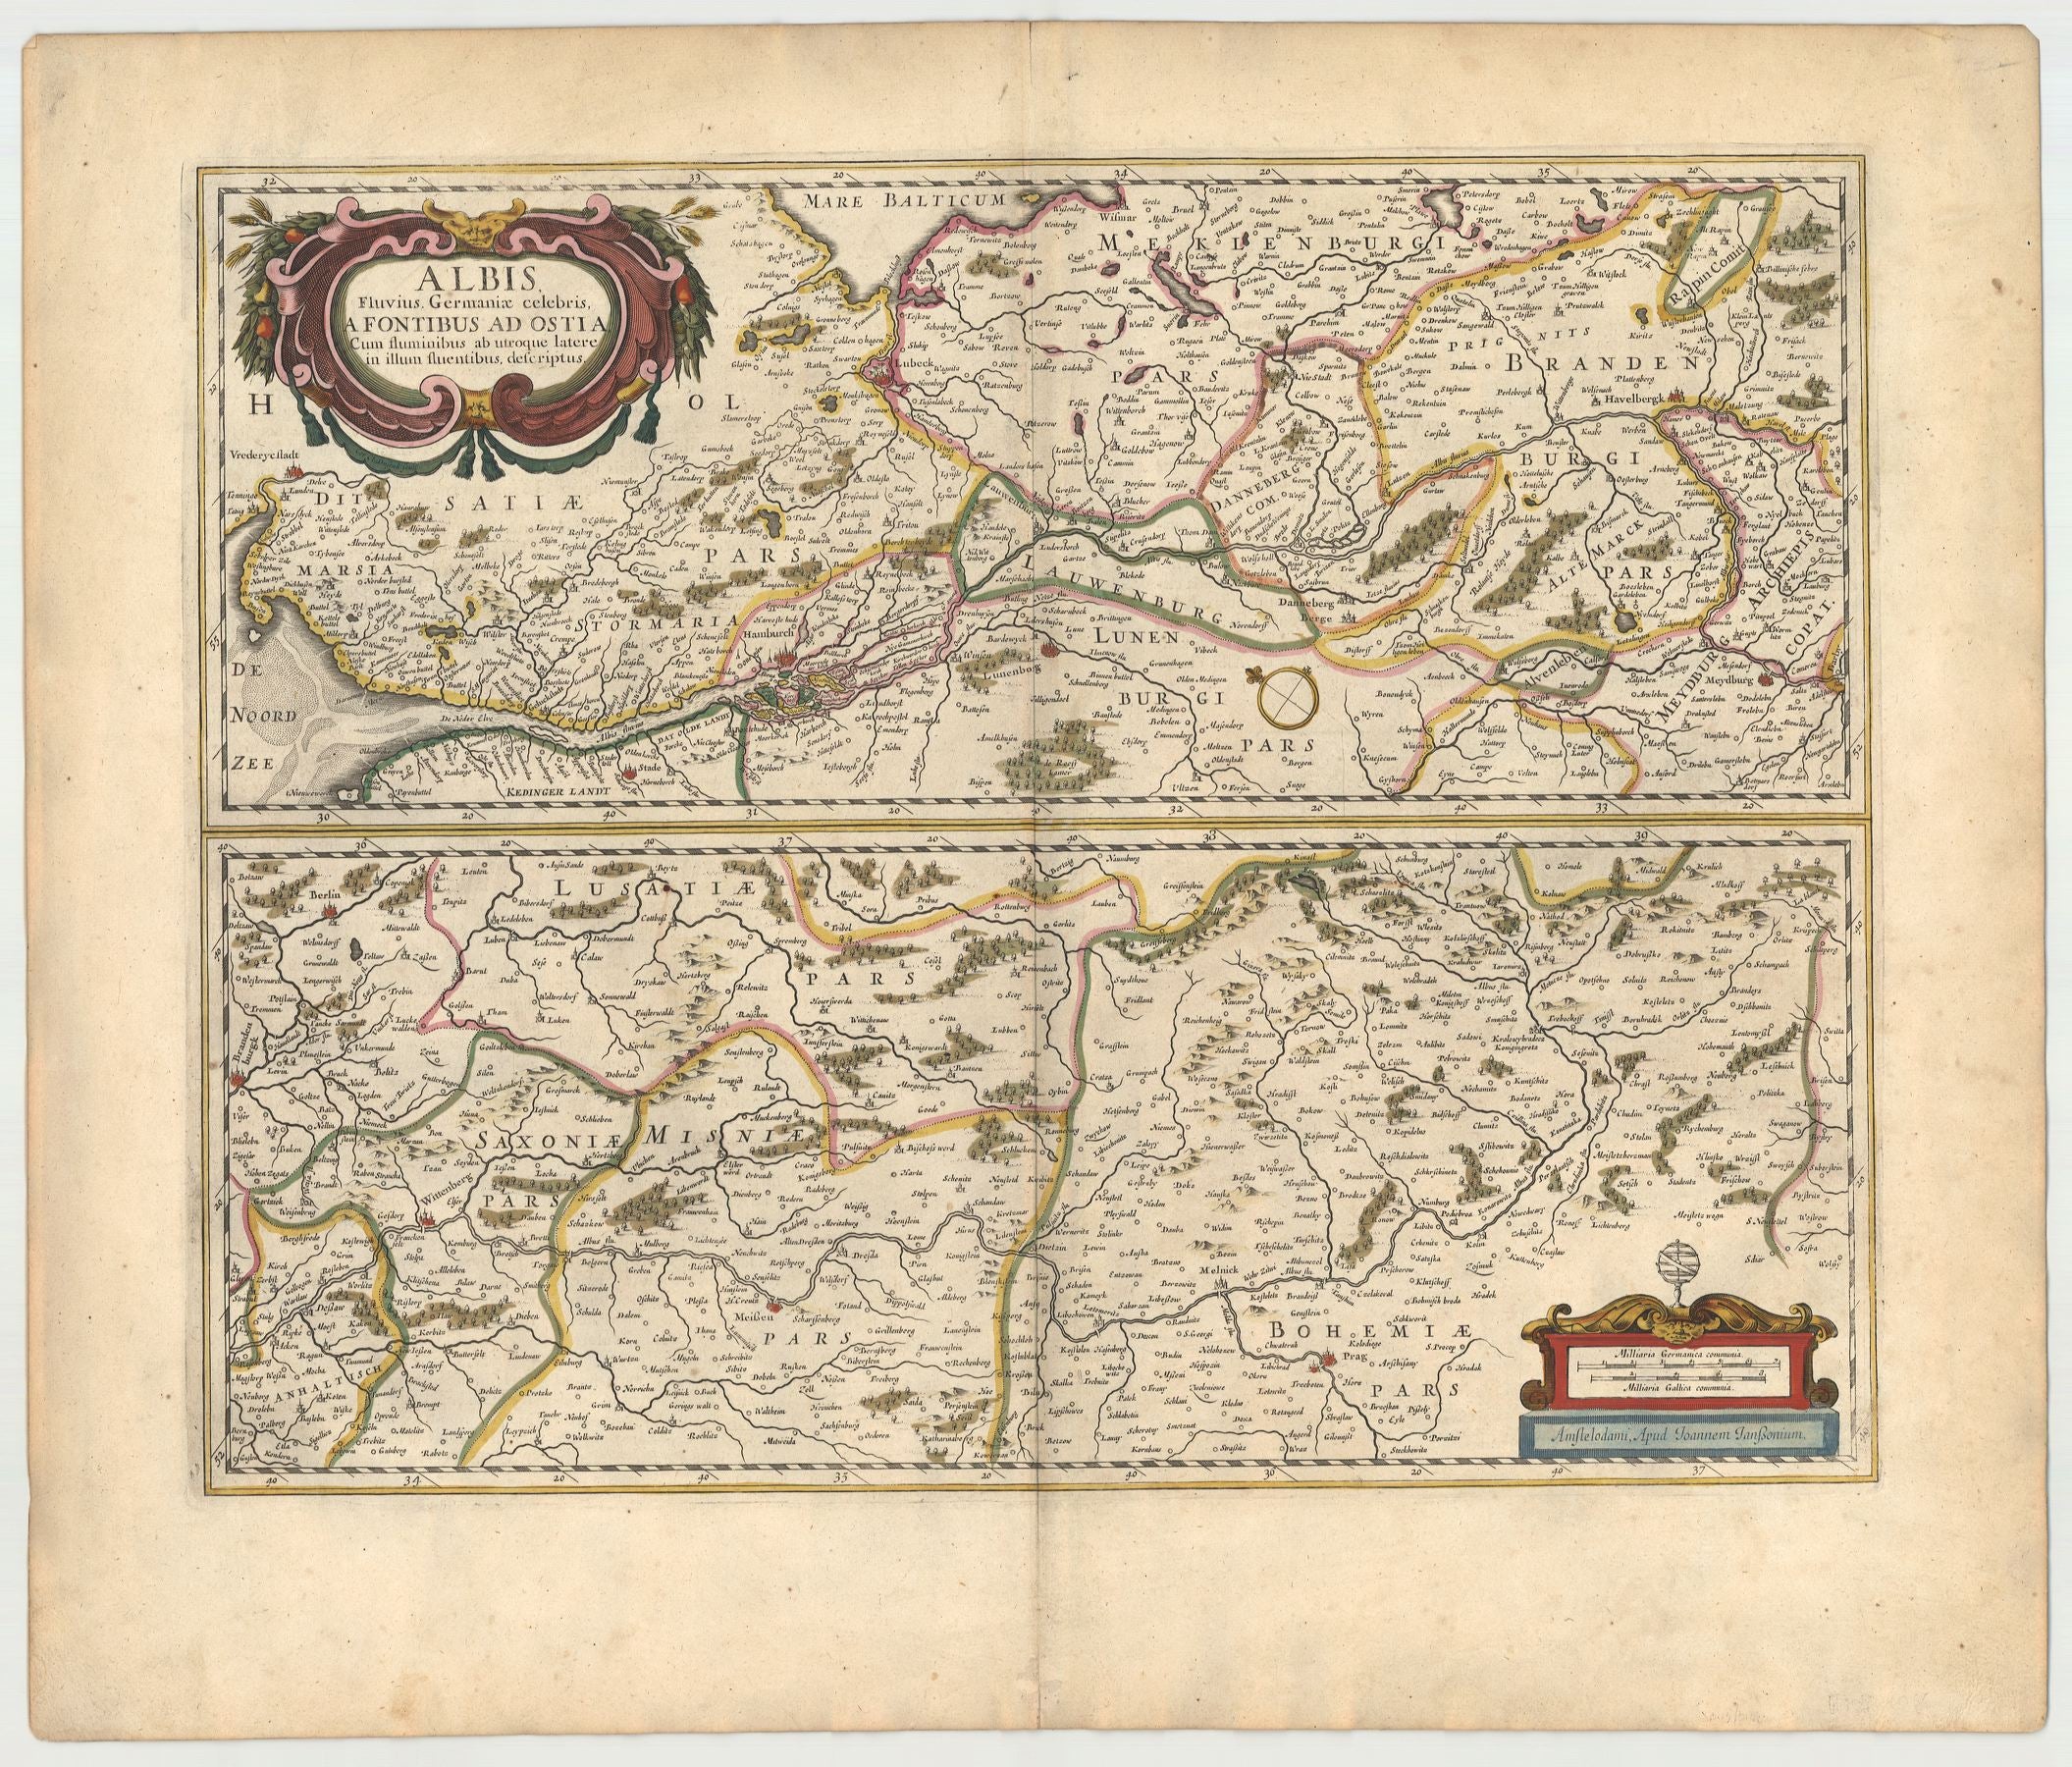 R3479  Janssonius, Johannes: Albis, Fluvius Germaniae celebris, a Fontibus ad Ostia. 1646